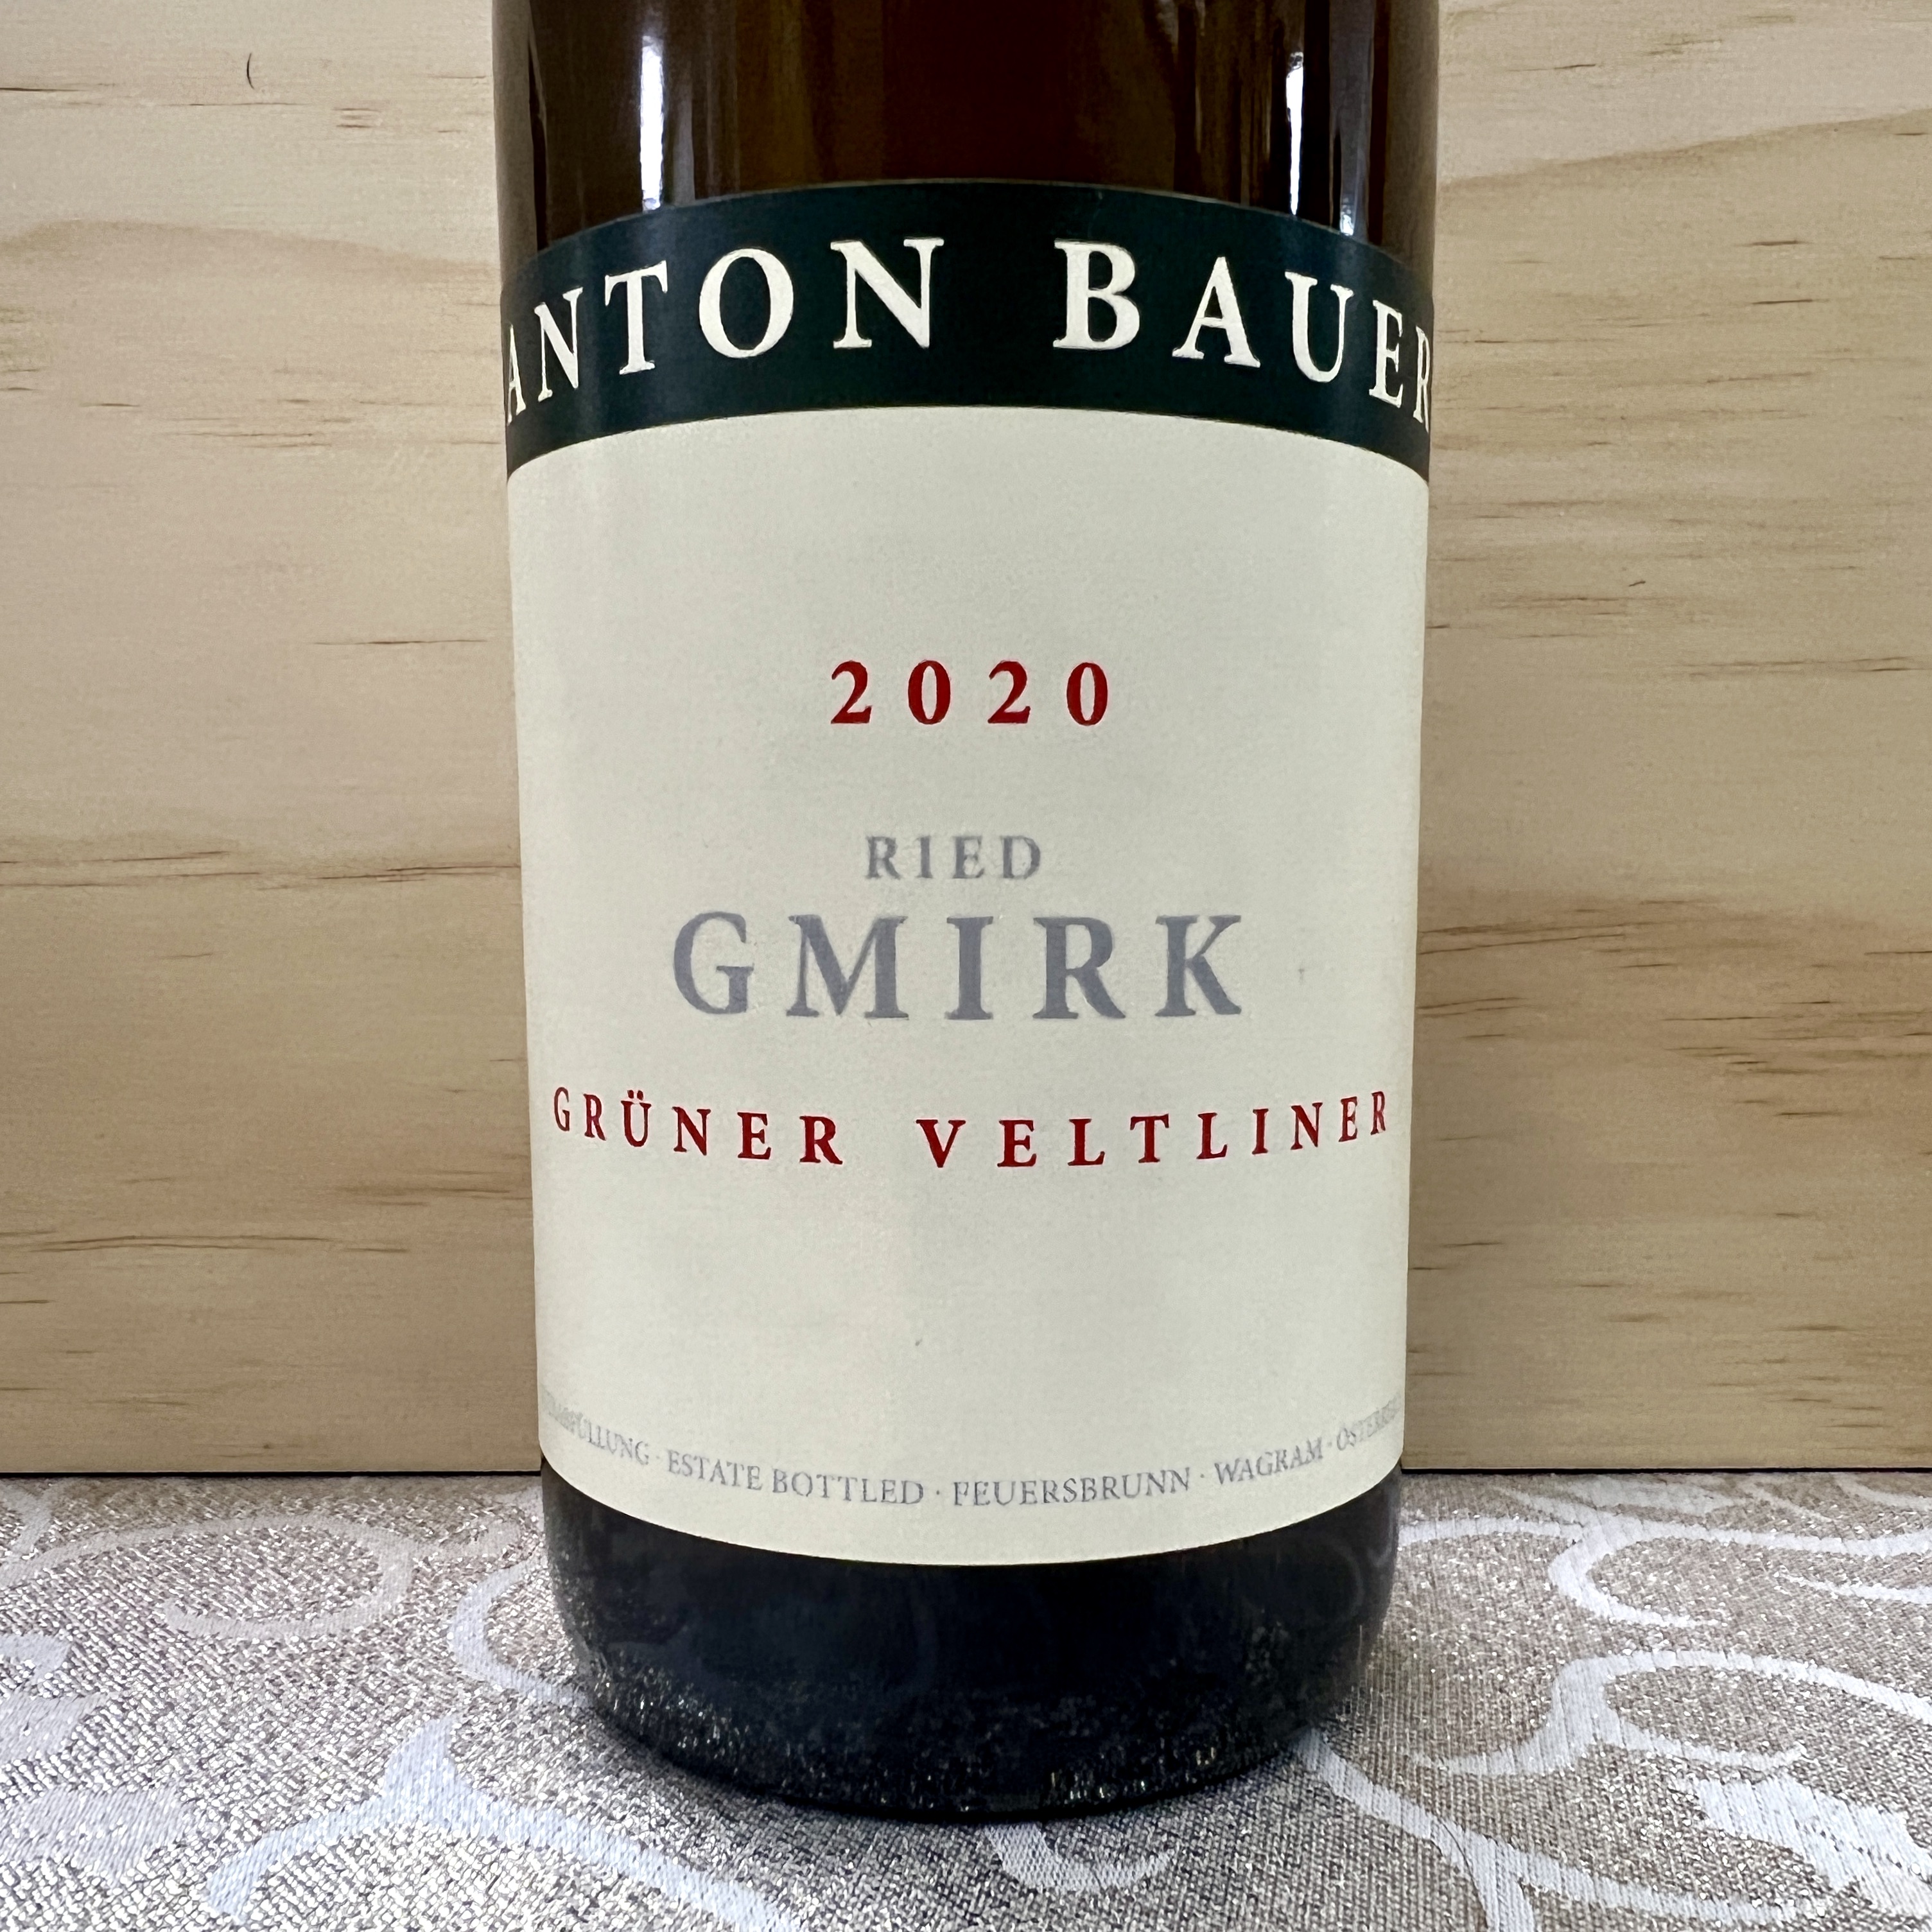 Anton Bauer Ried Gmirk Gruner Veltliner 2020